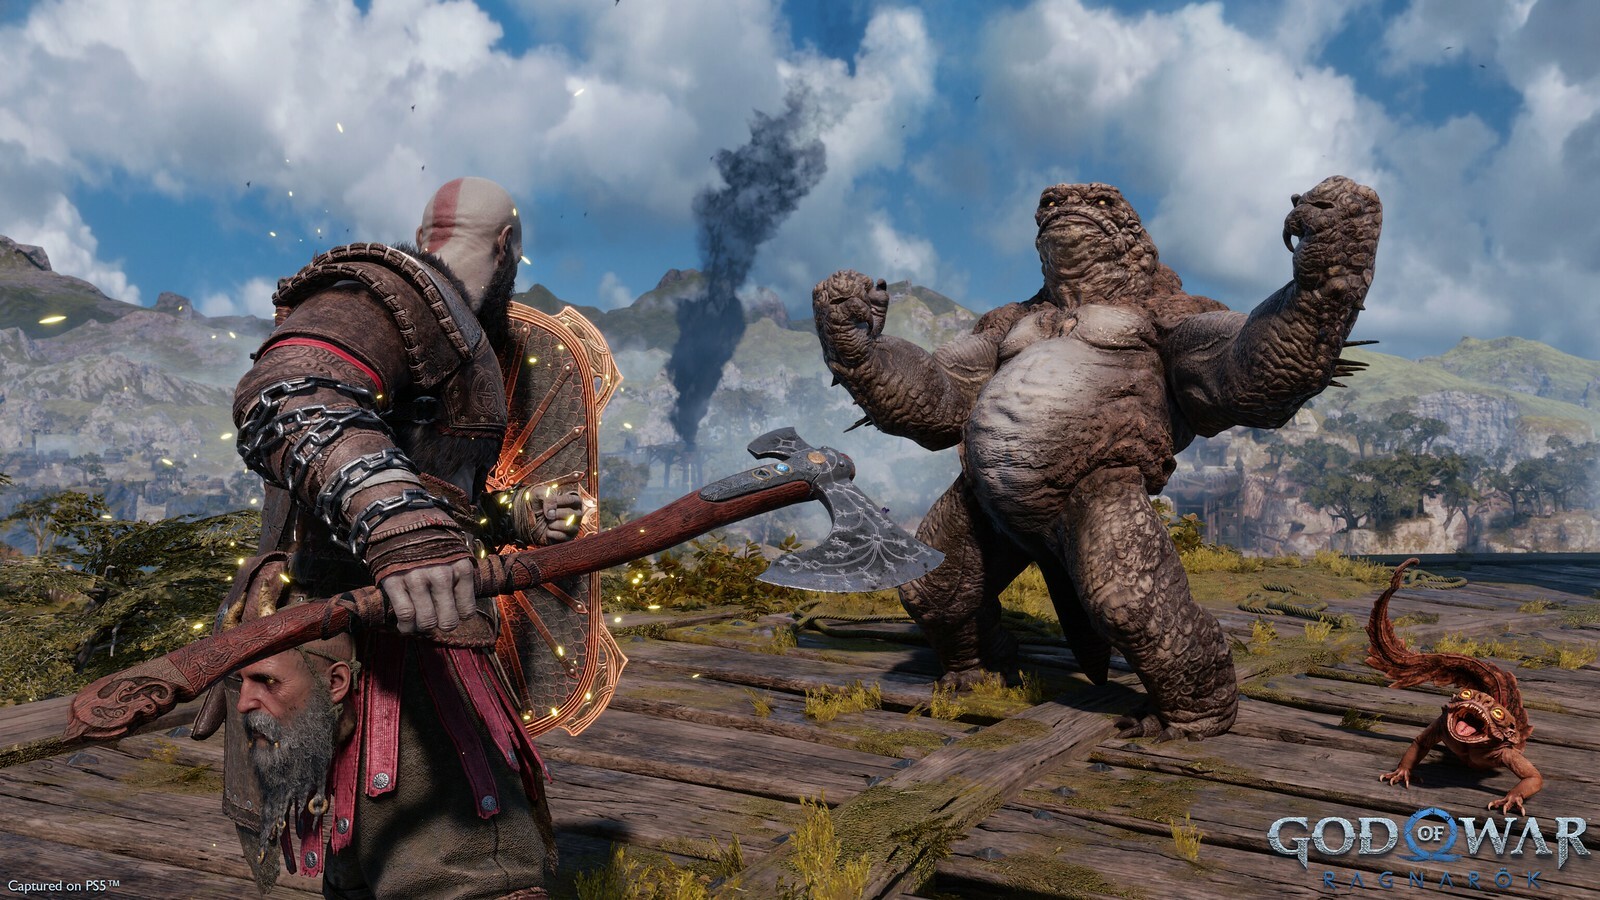 Kratos fighting a monster in God of War: Ragnarök